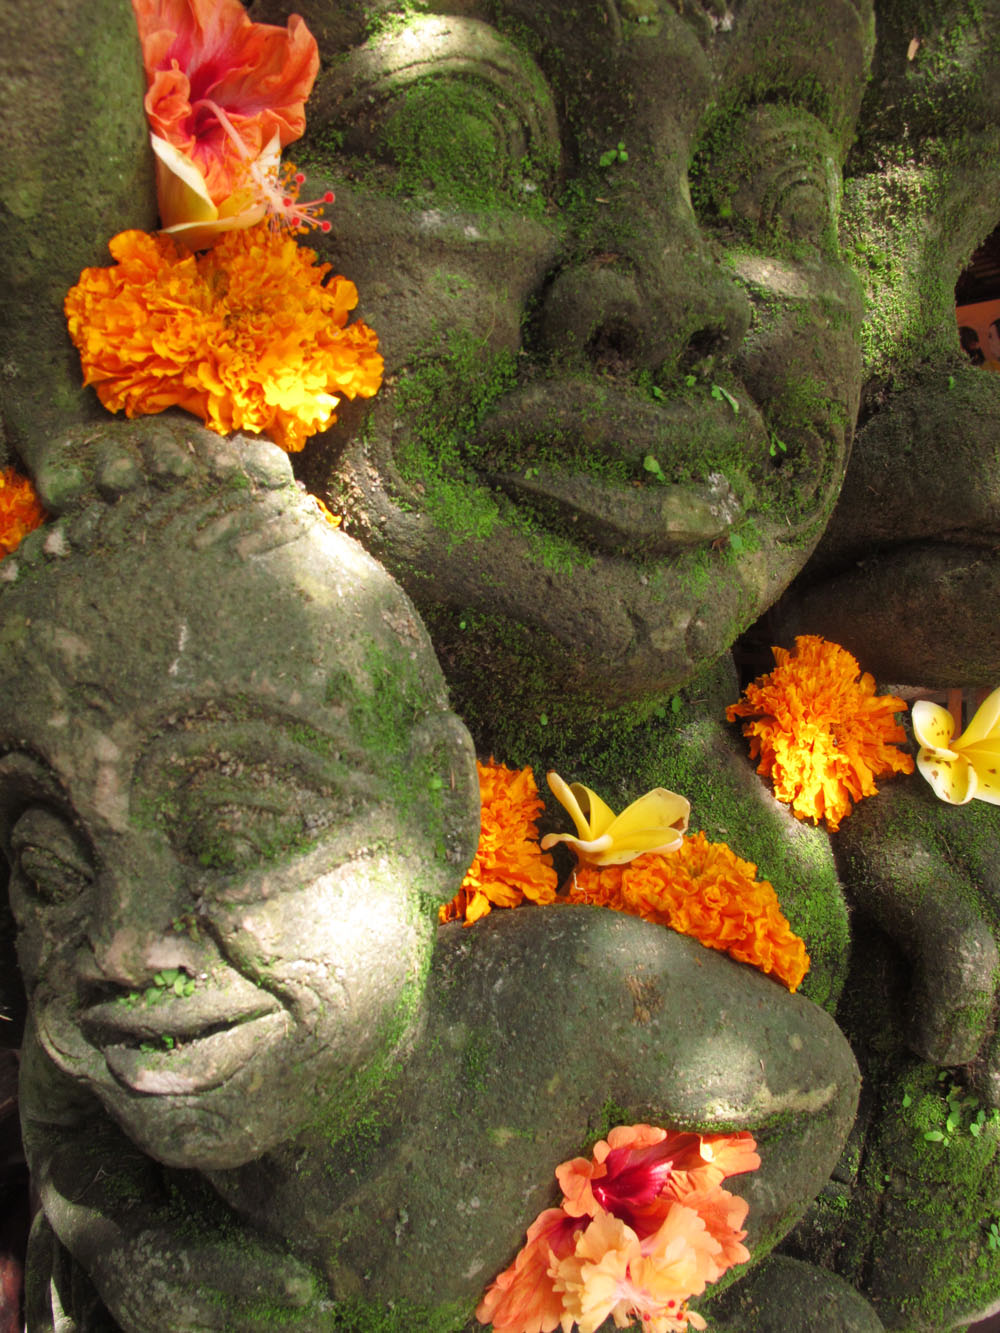 Marigolds adorn a Balinese sculpture